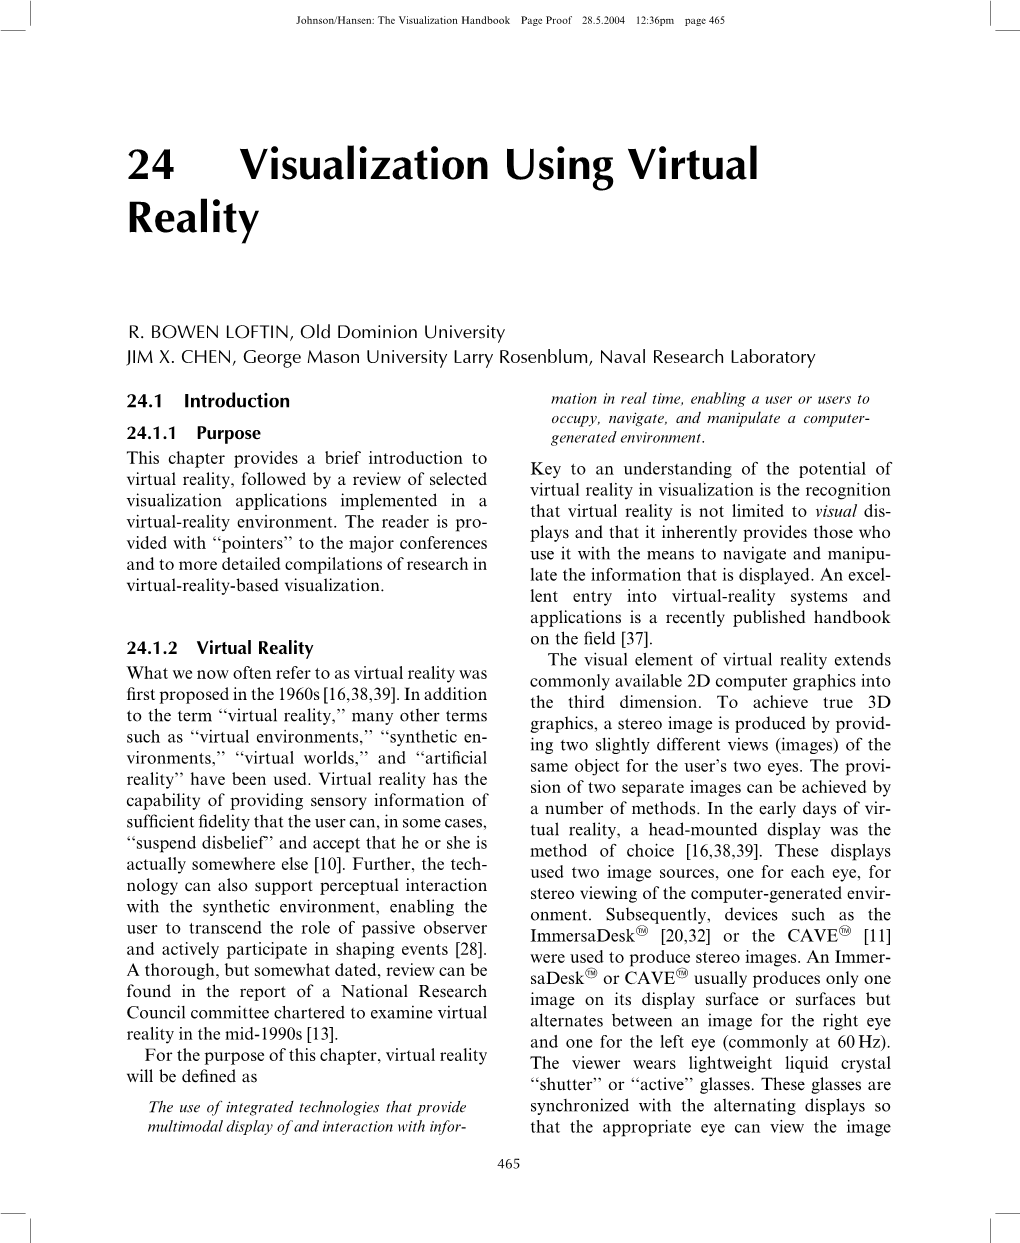 24 Visualization Using Virtual Reality